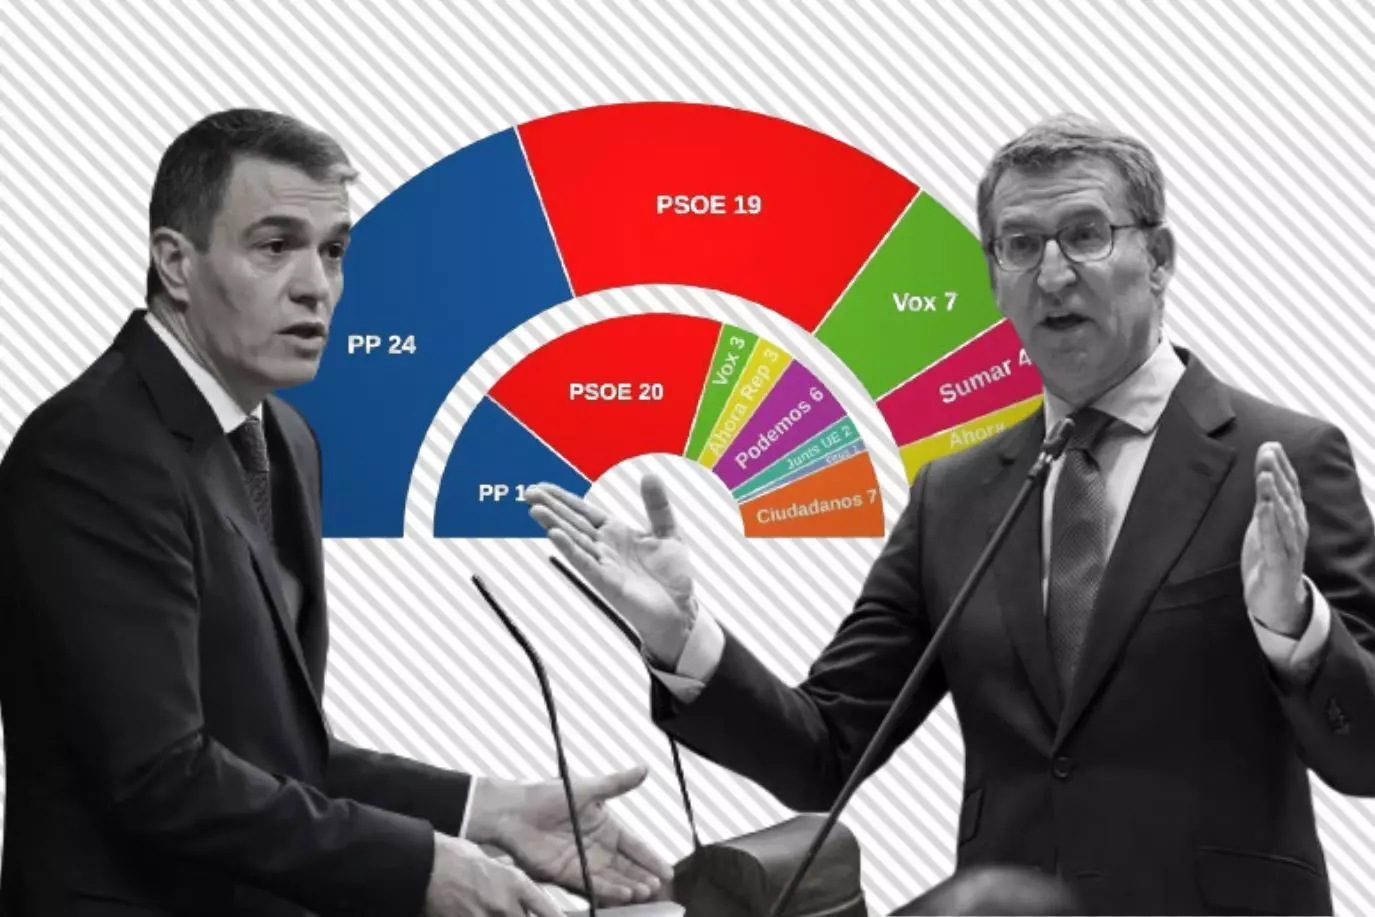 Pedro Sánchez y Alberto Núñez Feijóo, enfrentados en un montaje sobre la estimación de reparto de escaños en el Parlamento Europeo hecha por Key Data para 'Público'. — Público.